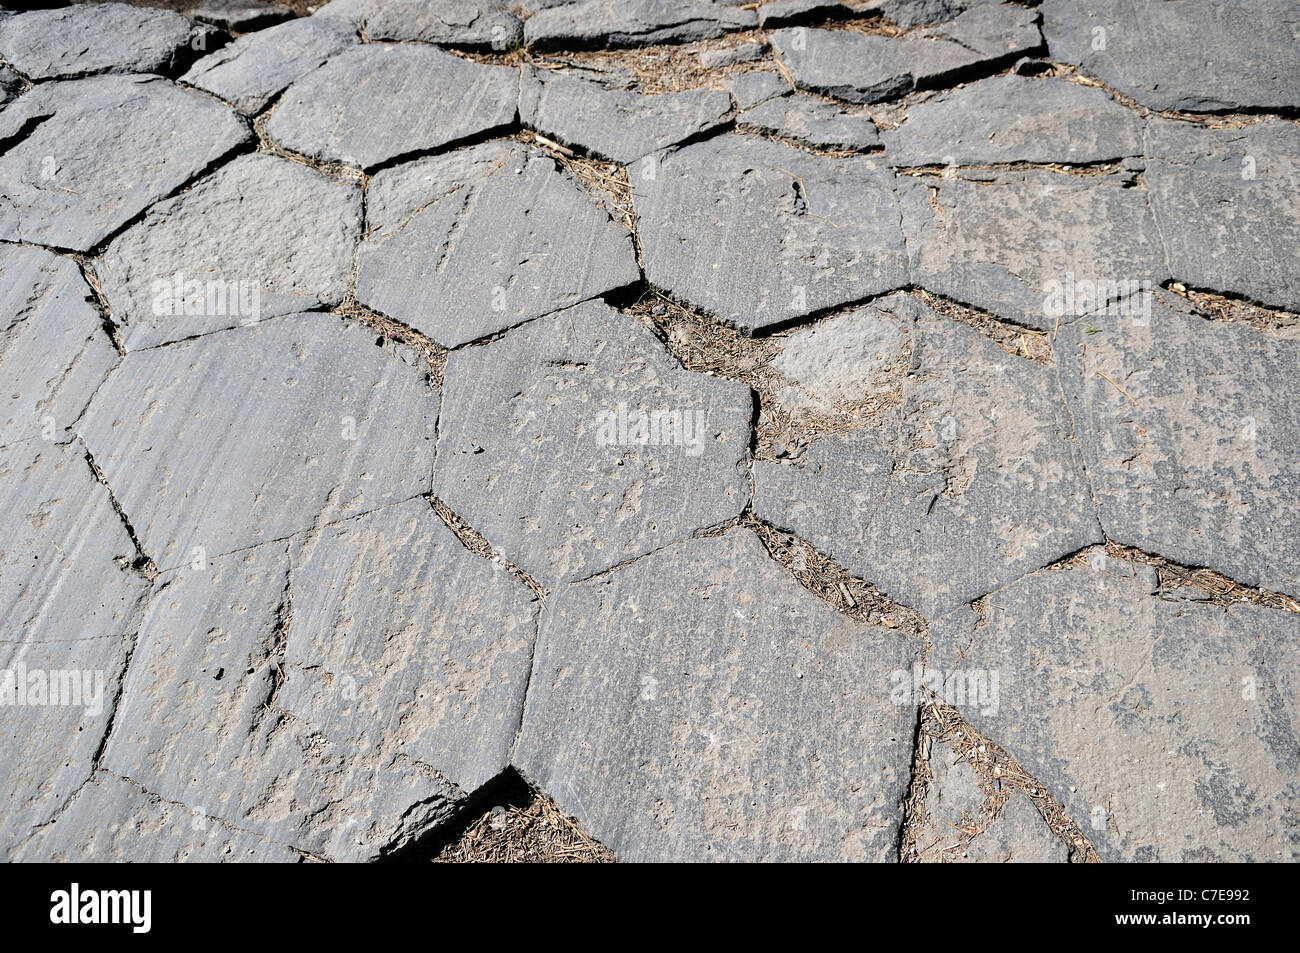 Striature glaciale sulla sezione trasversale poligonale di colonne di basalto presso l' Devils Postpile National Monument. In California, Stati Uniti d'America. Foto Stock